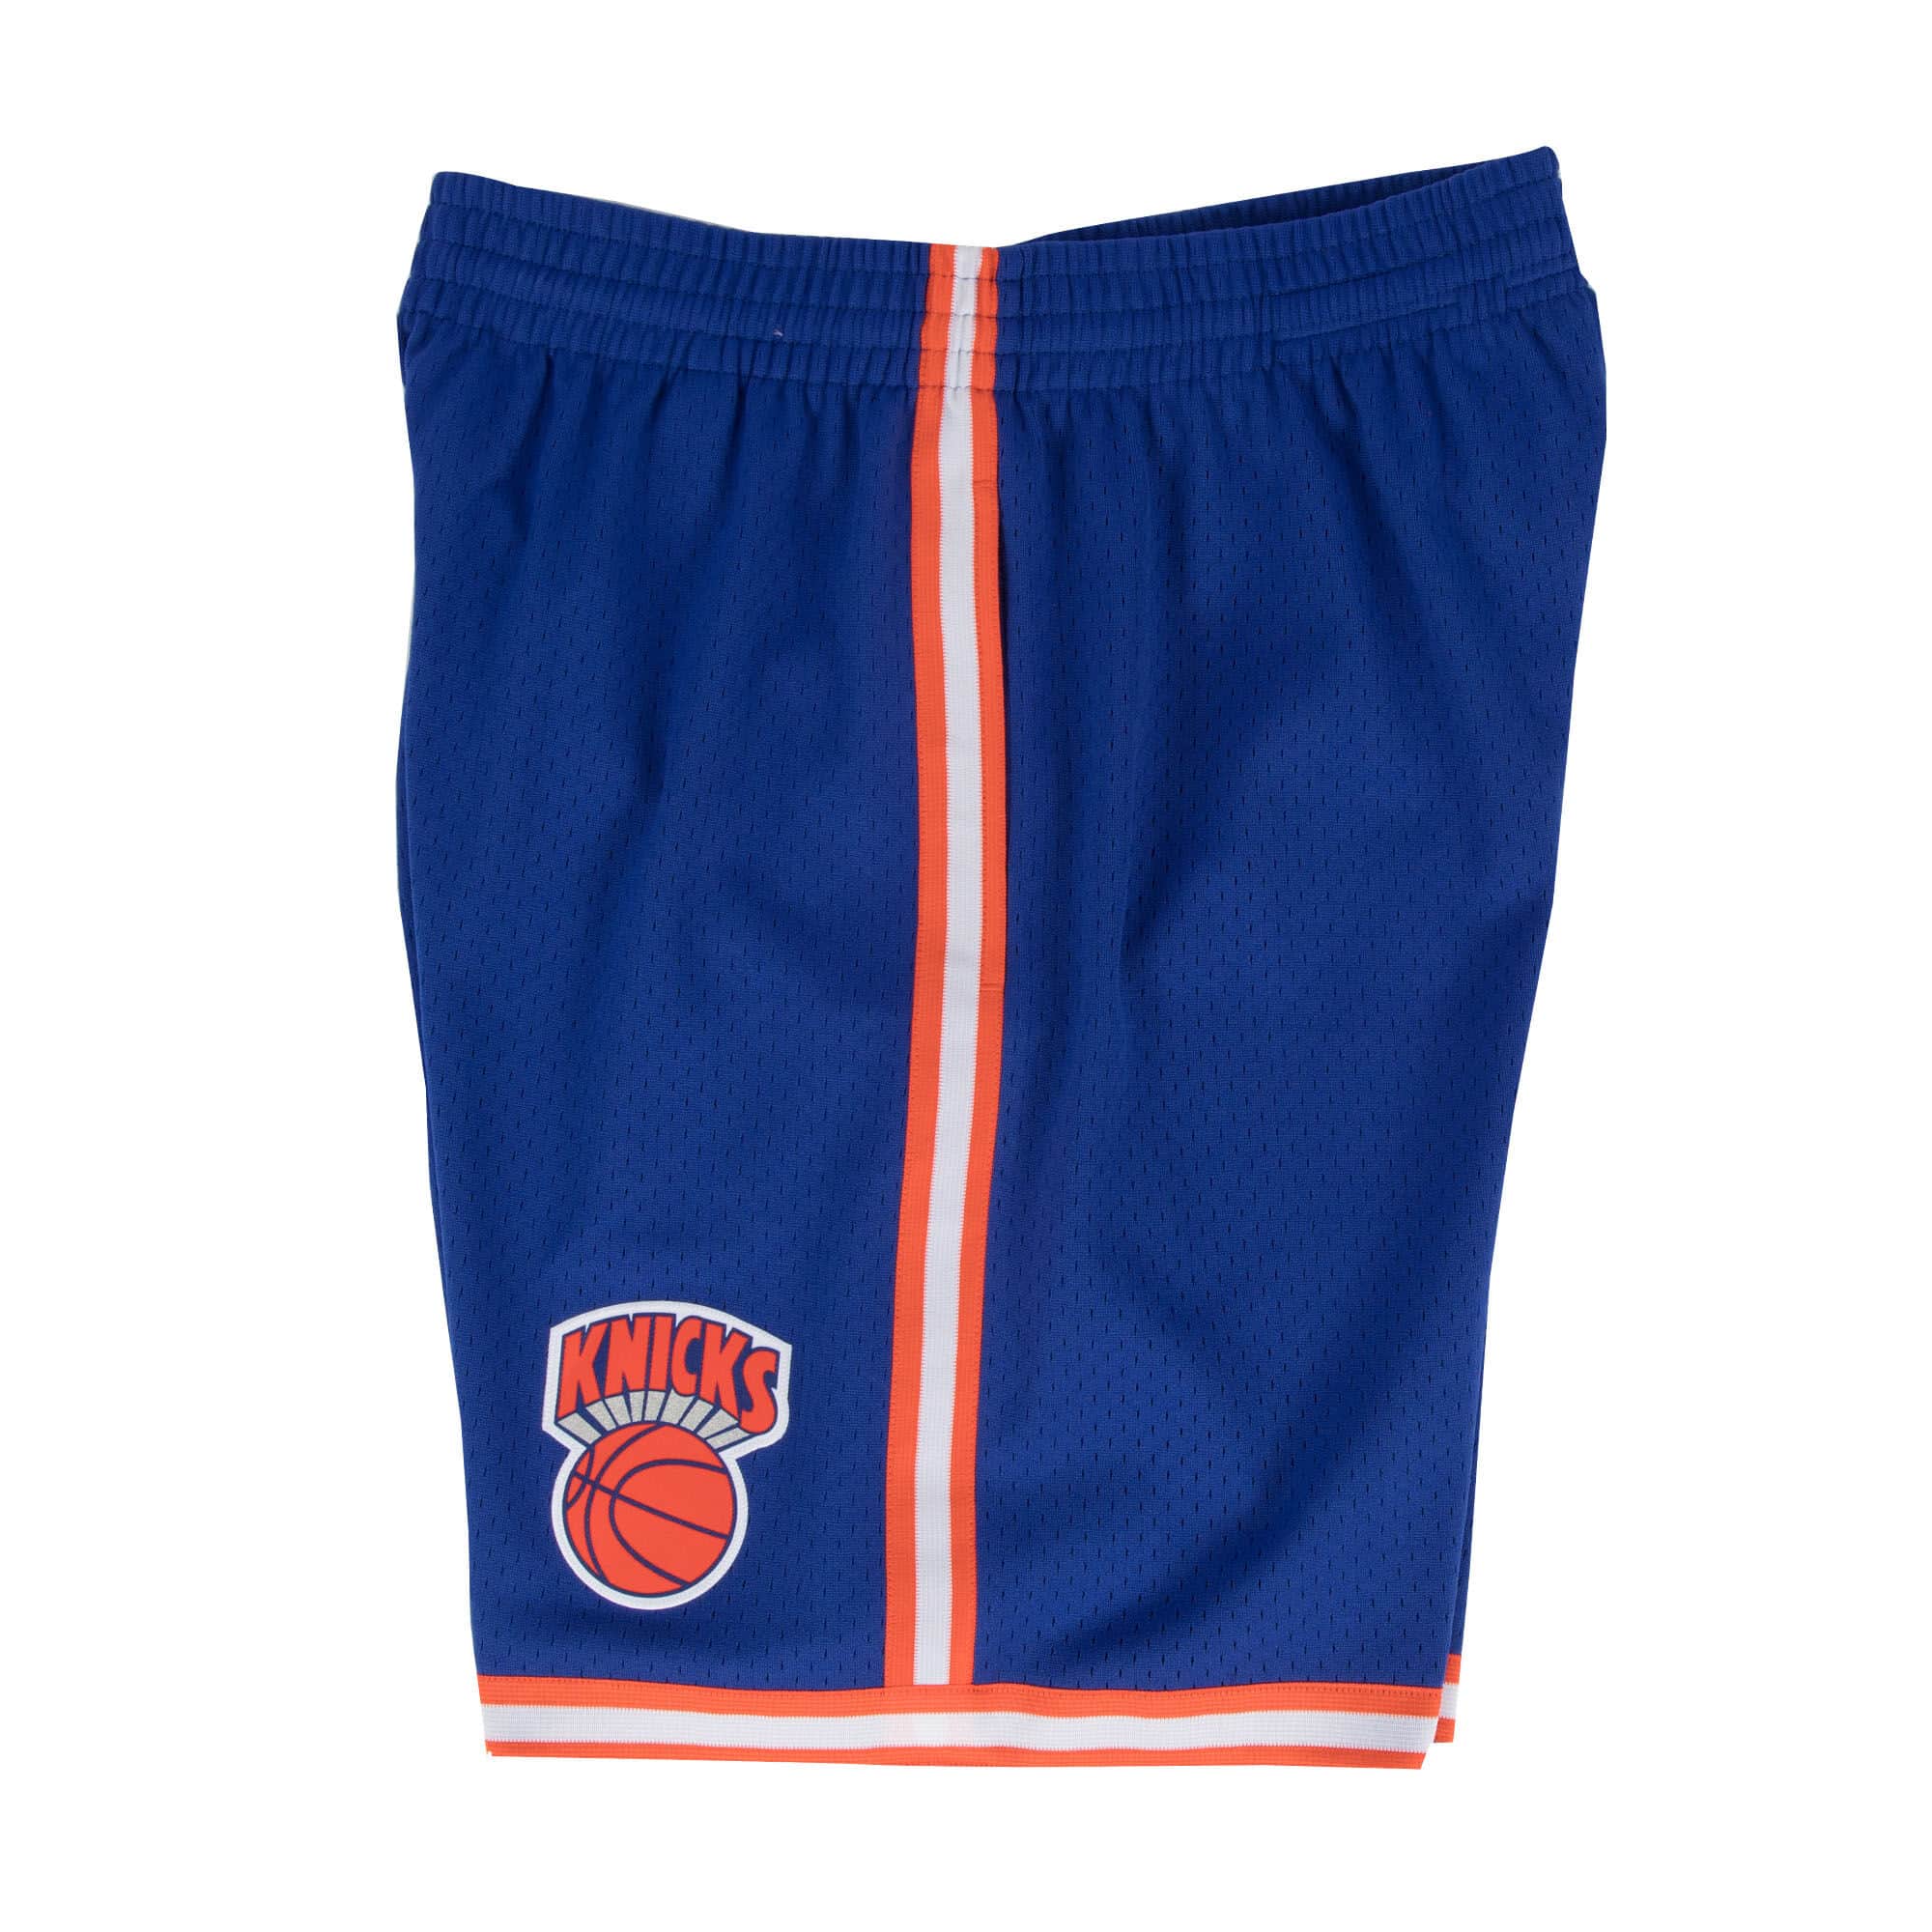 joy midi dress Men NBA New York Knicks Swingman Short Royal 1991 SMSH18241NYKB91 - SHORTS - Canada